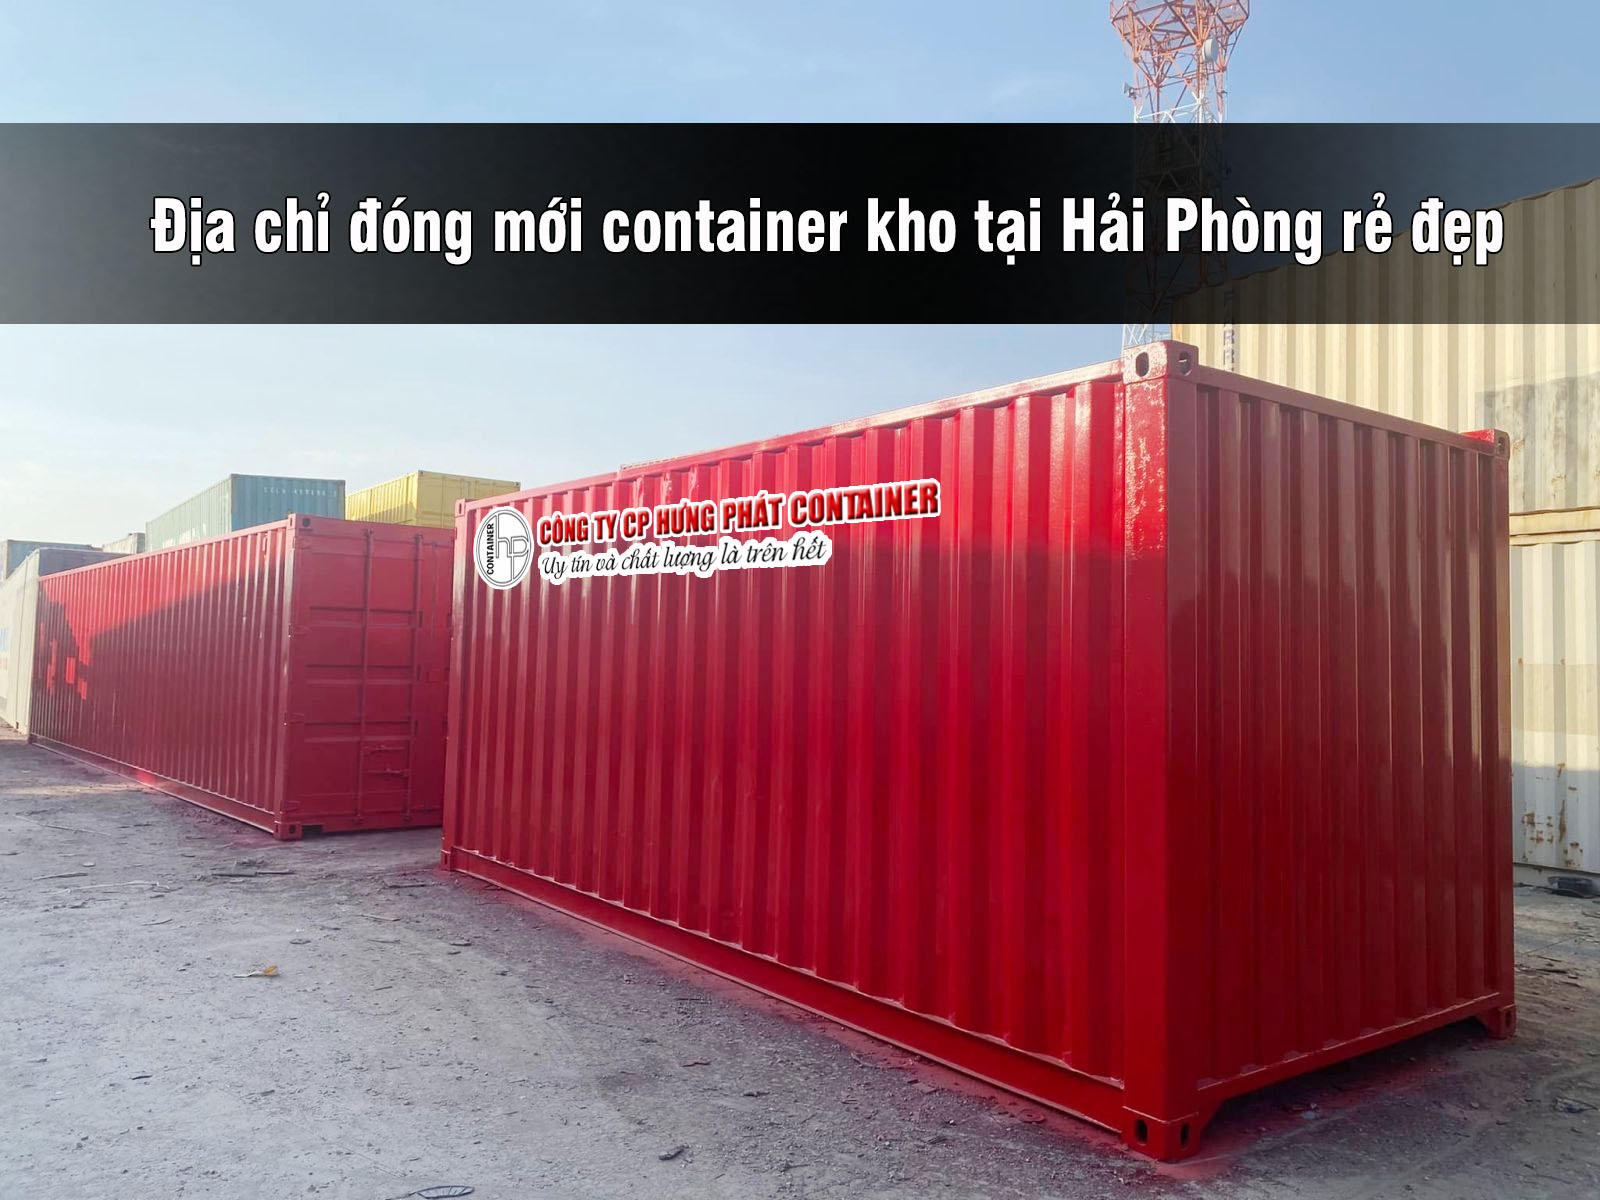 Địa chỉ đóng mới container kho tại Hải Phòng rẻ đẹp